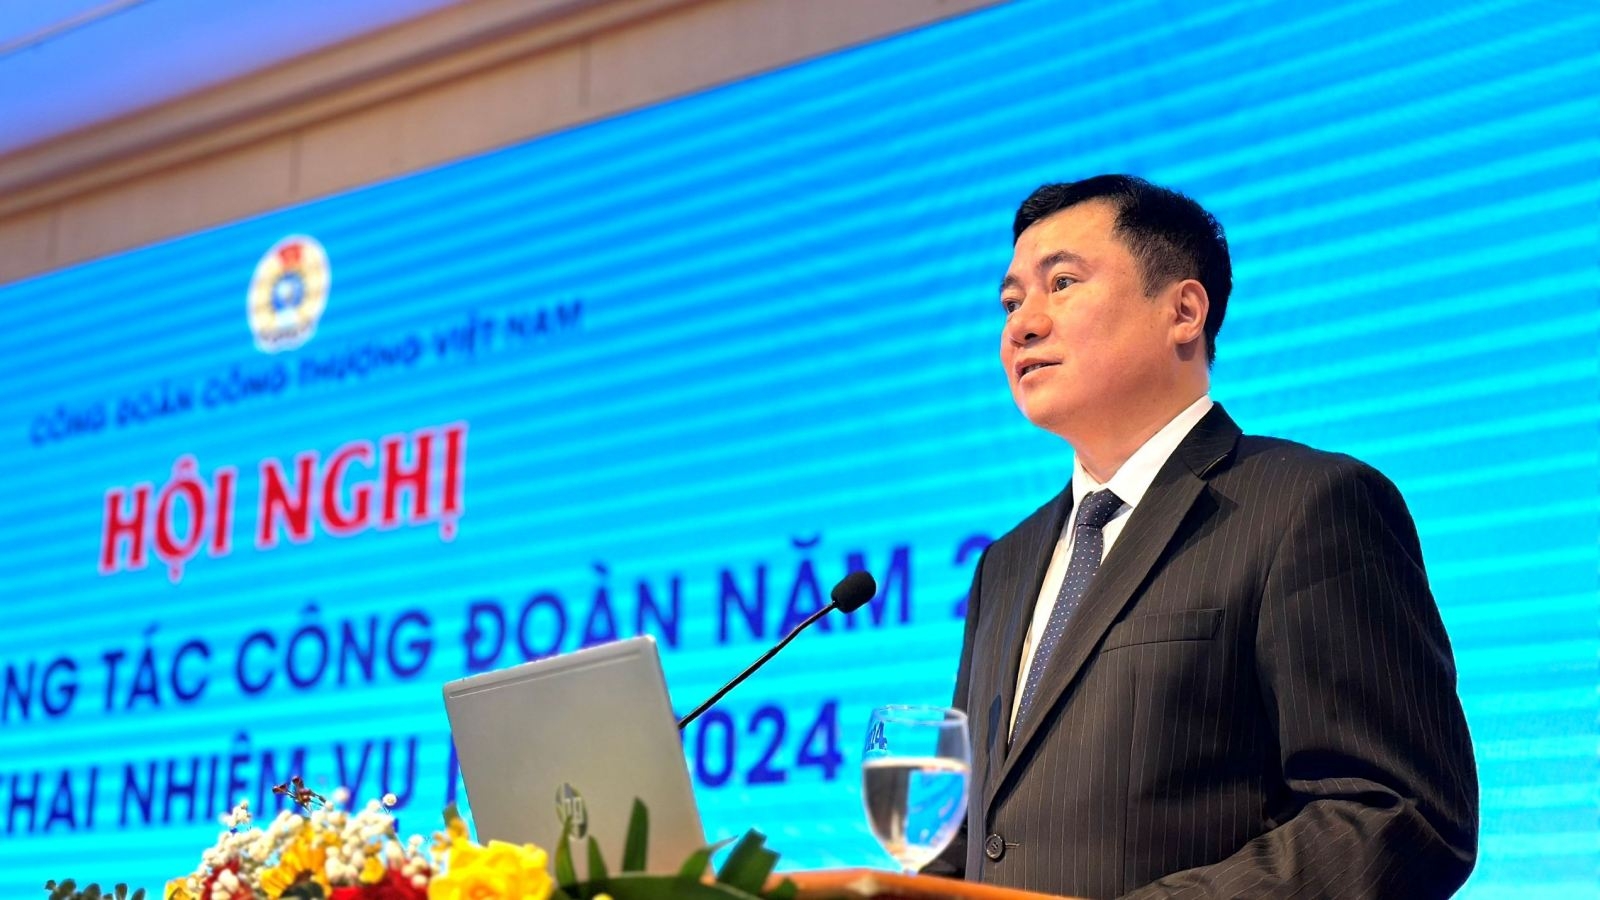 Công đoàn Công Thương Việt Nam: Tổng kết công tác công đoàn năm 2023, triển khai nhiệm vụ năm 2024